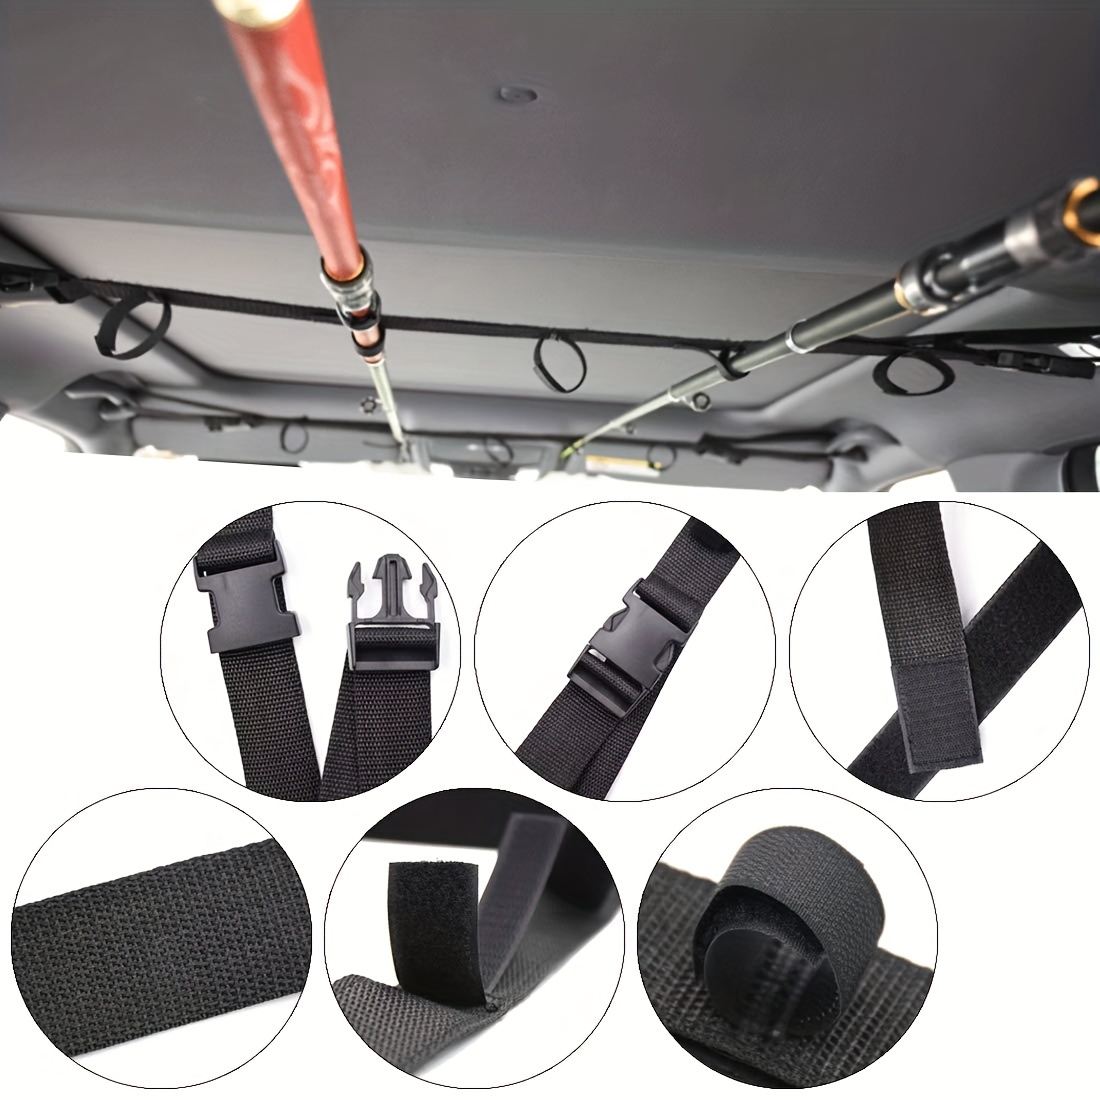 2pcs Adjustable Vehicle Fishing Rod Holder, Car Pole Carrier, Belt Strap  For SUV Wagon Van